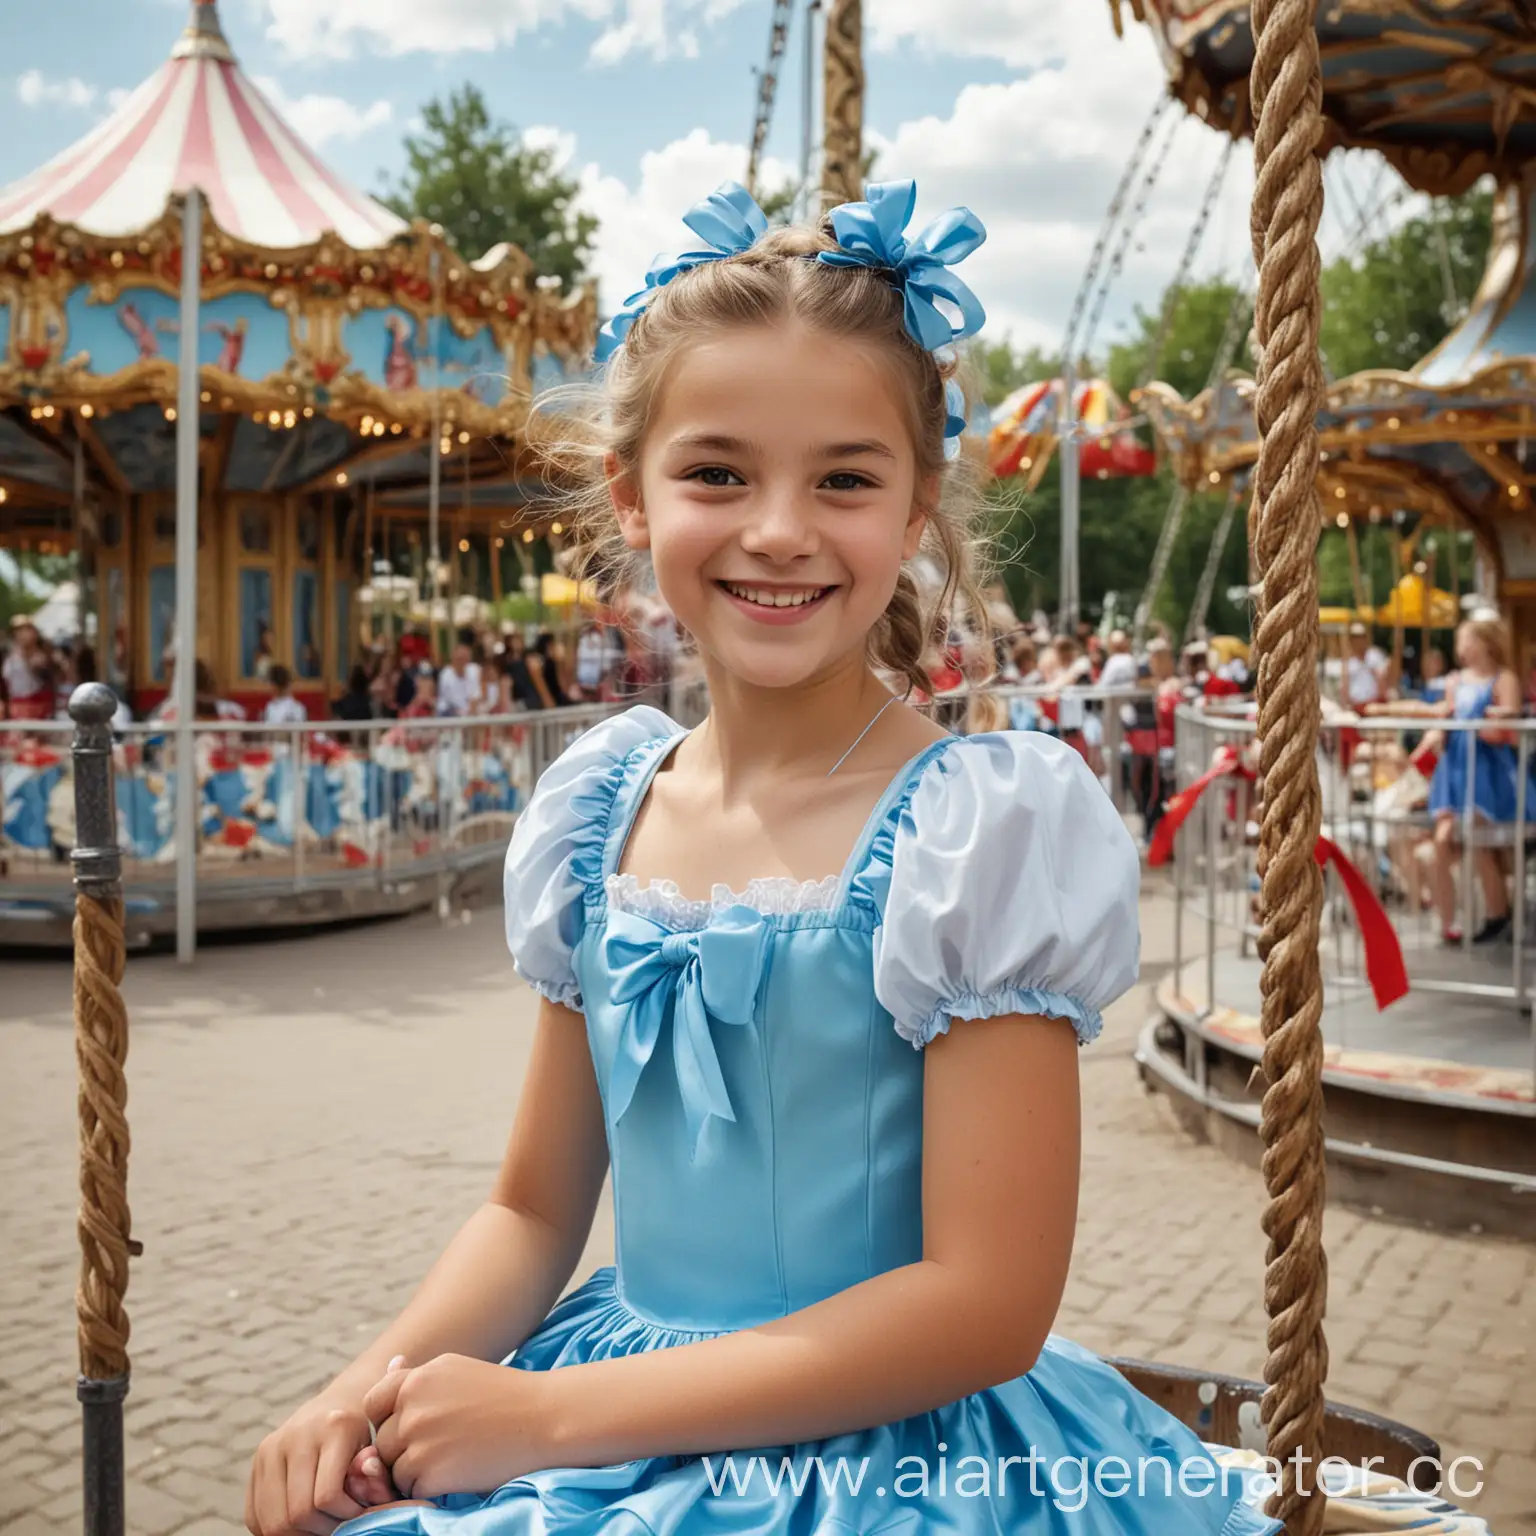 Smiling-12YearOld-Girl-Enjoying-Carousel-Ride-in-Summer-Amusement-Park